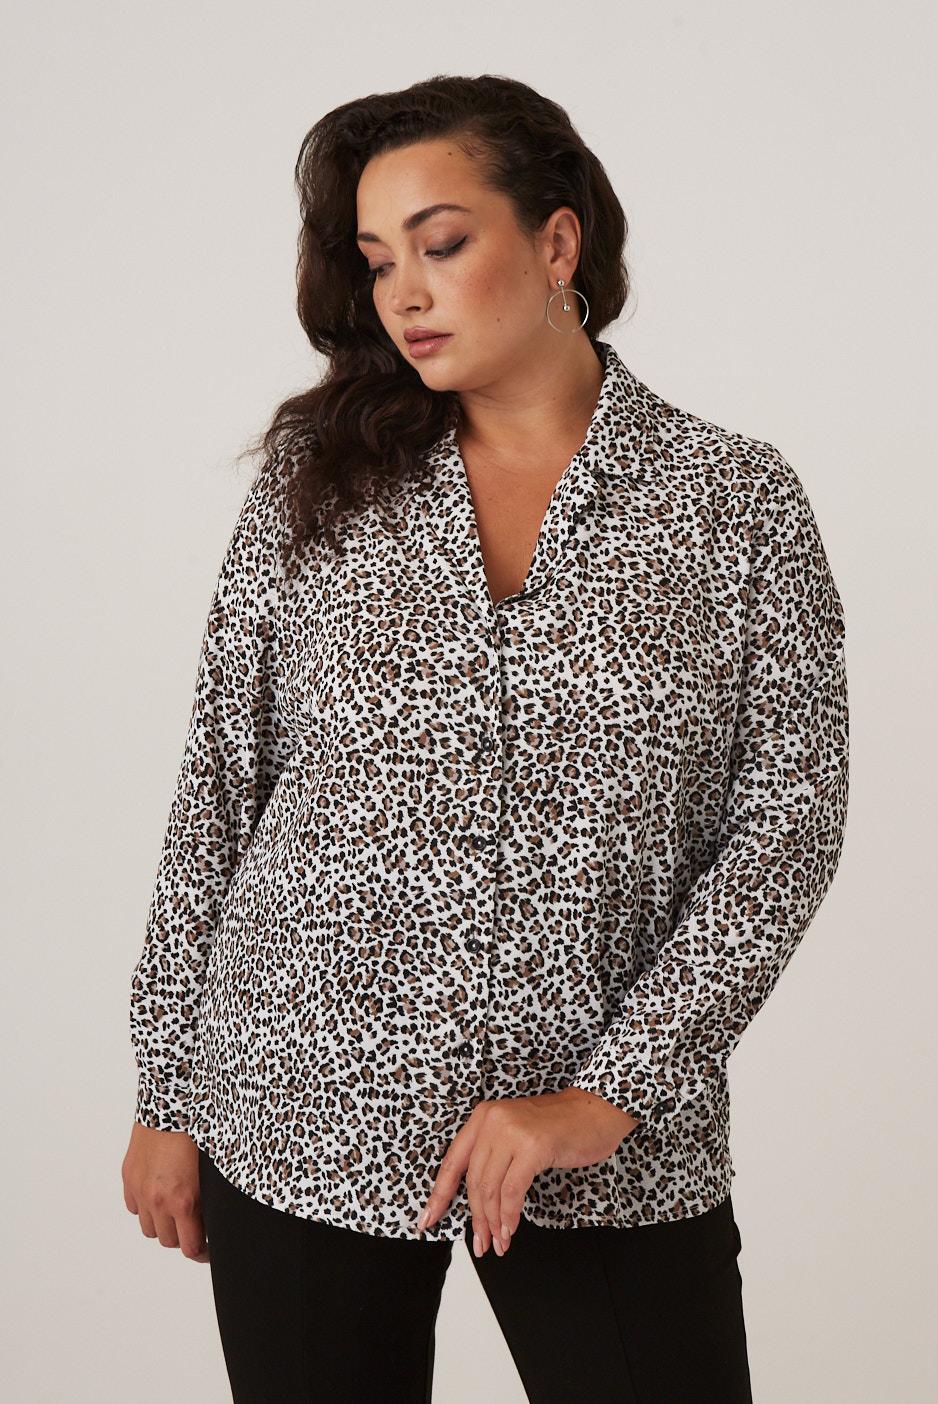 Блузка с принтом леопард в стиле девяностых